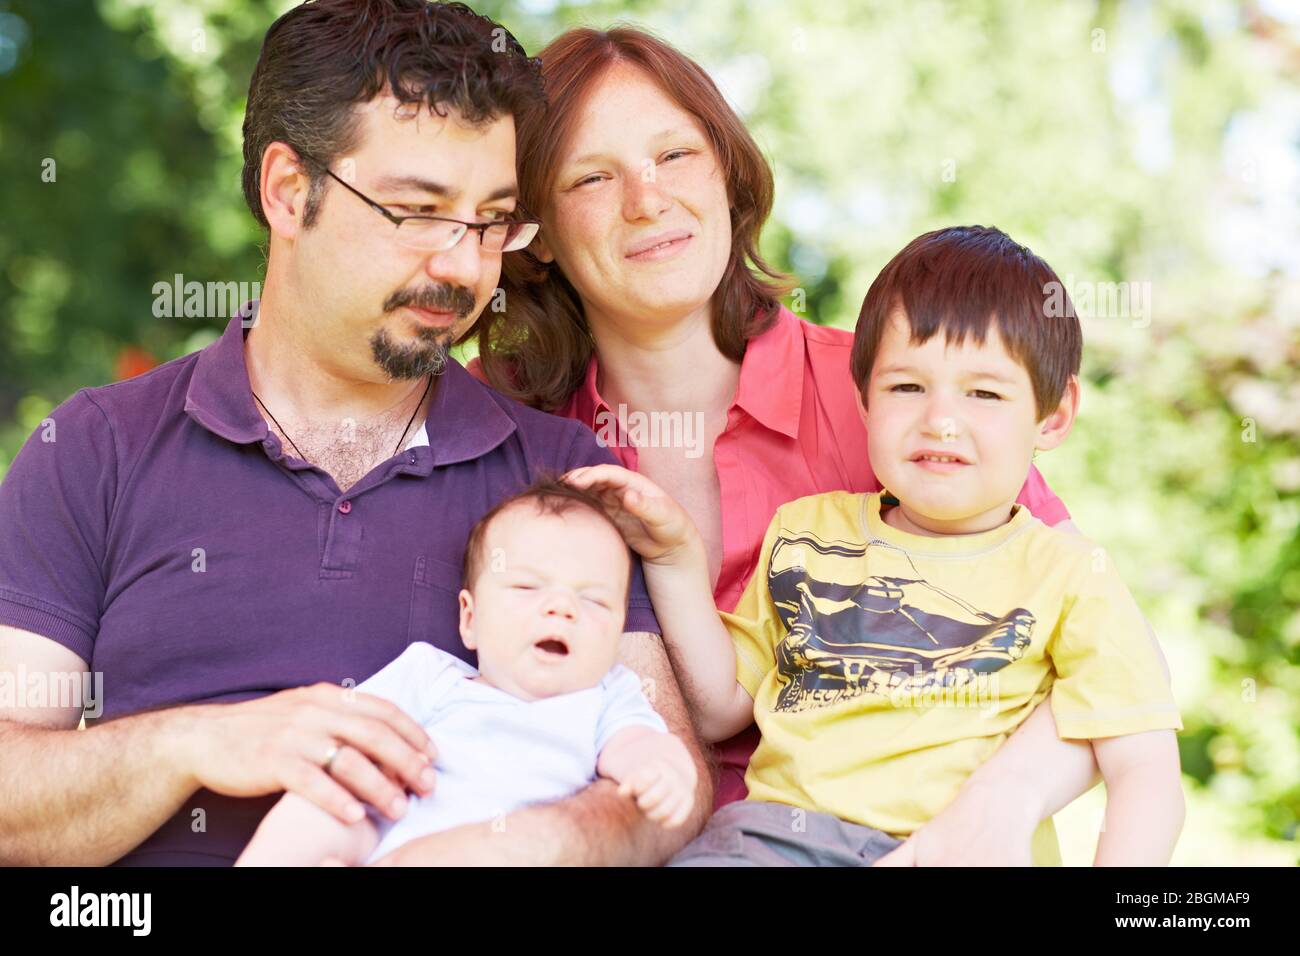 Glückliche Familie mit Kind und Baby sitzt im Grünen Stock Photo